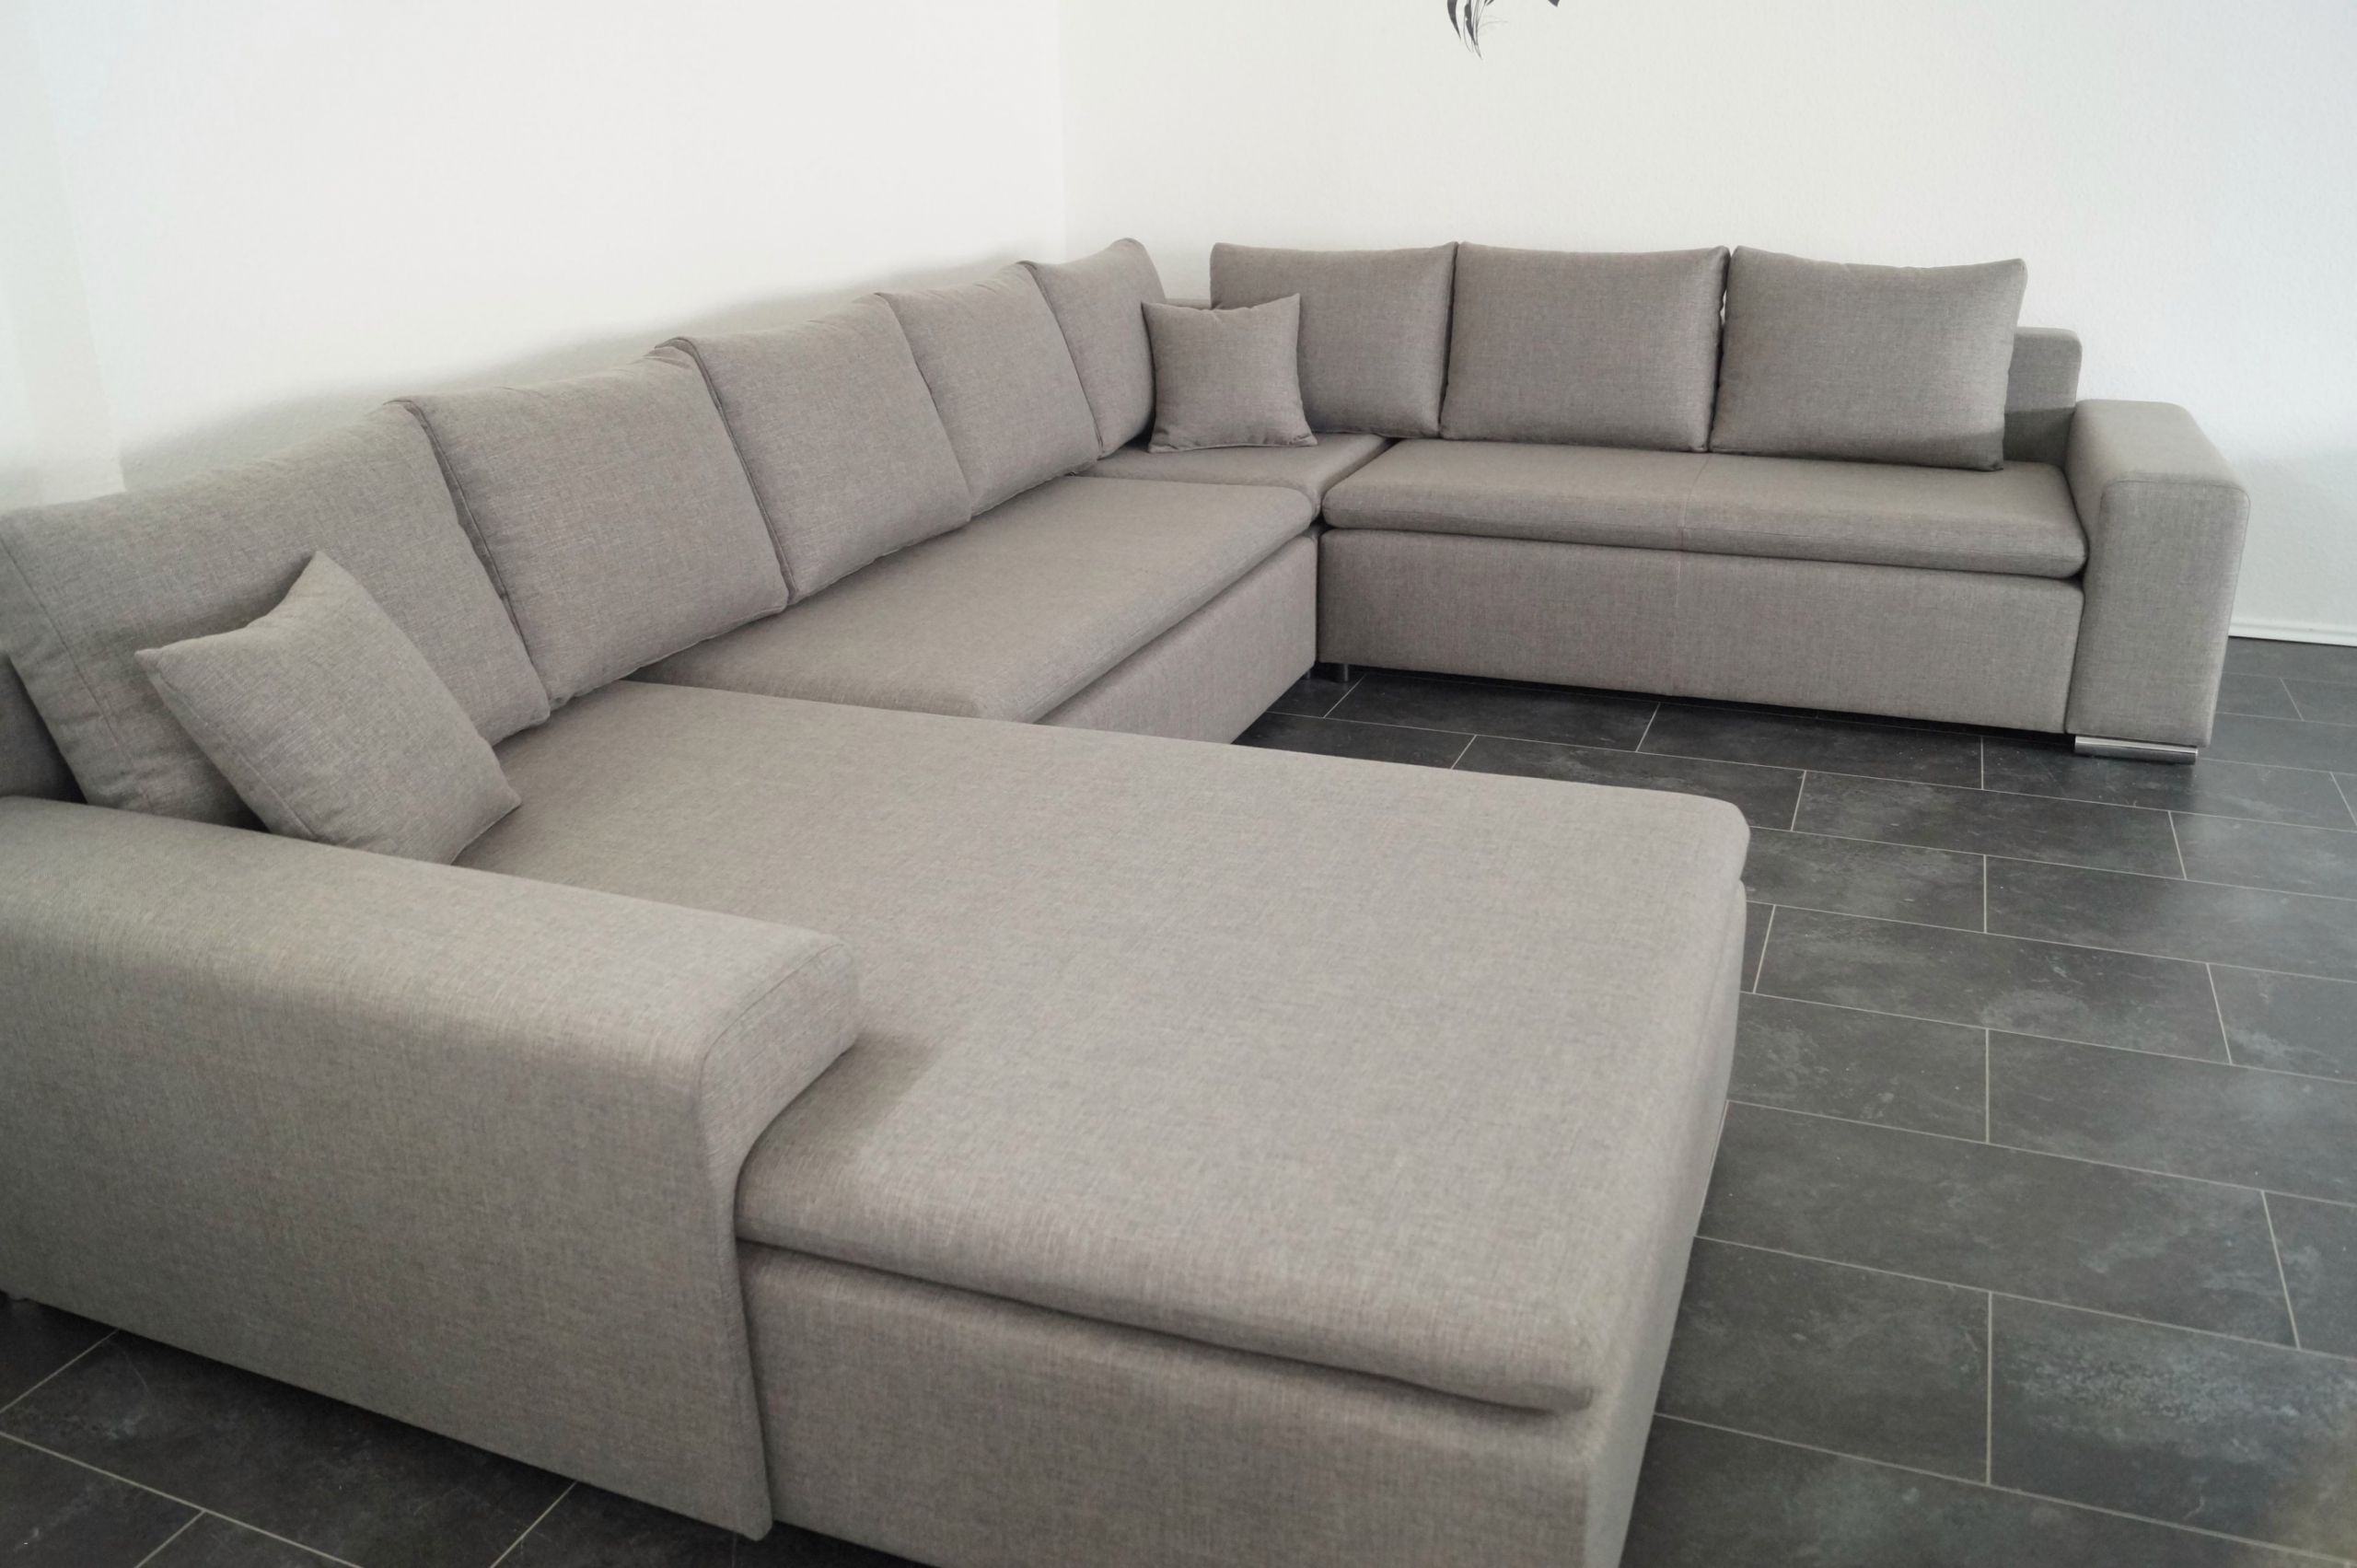 braune couch wohnzimmer dekor am besten couch braun beste decken graue couch dekorieren graue couch dekorieren